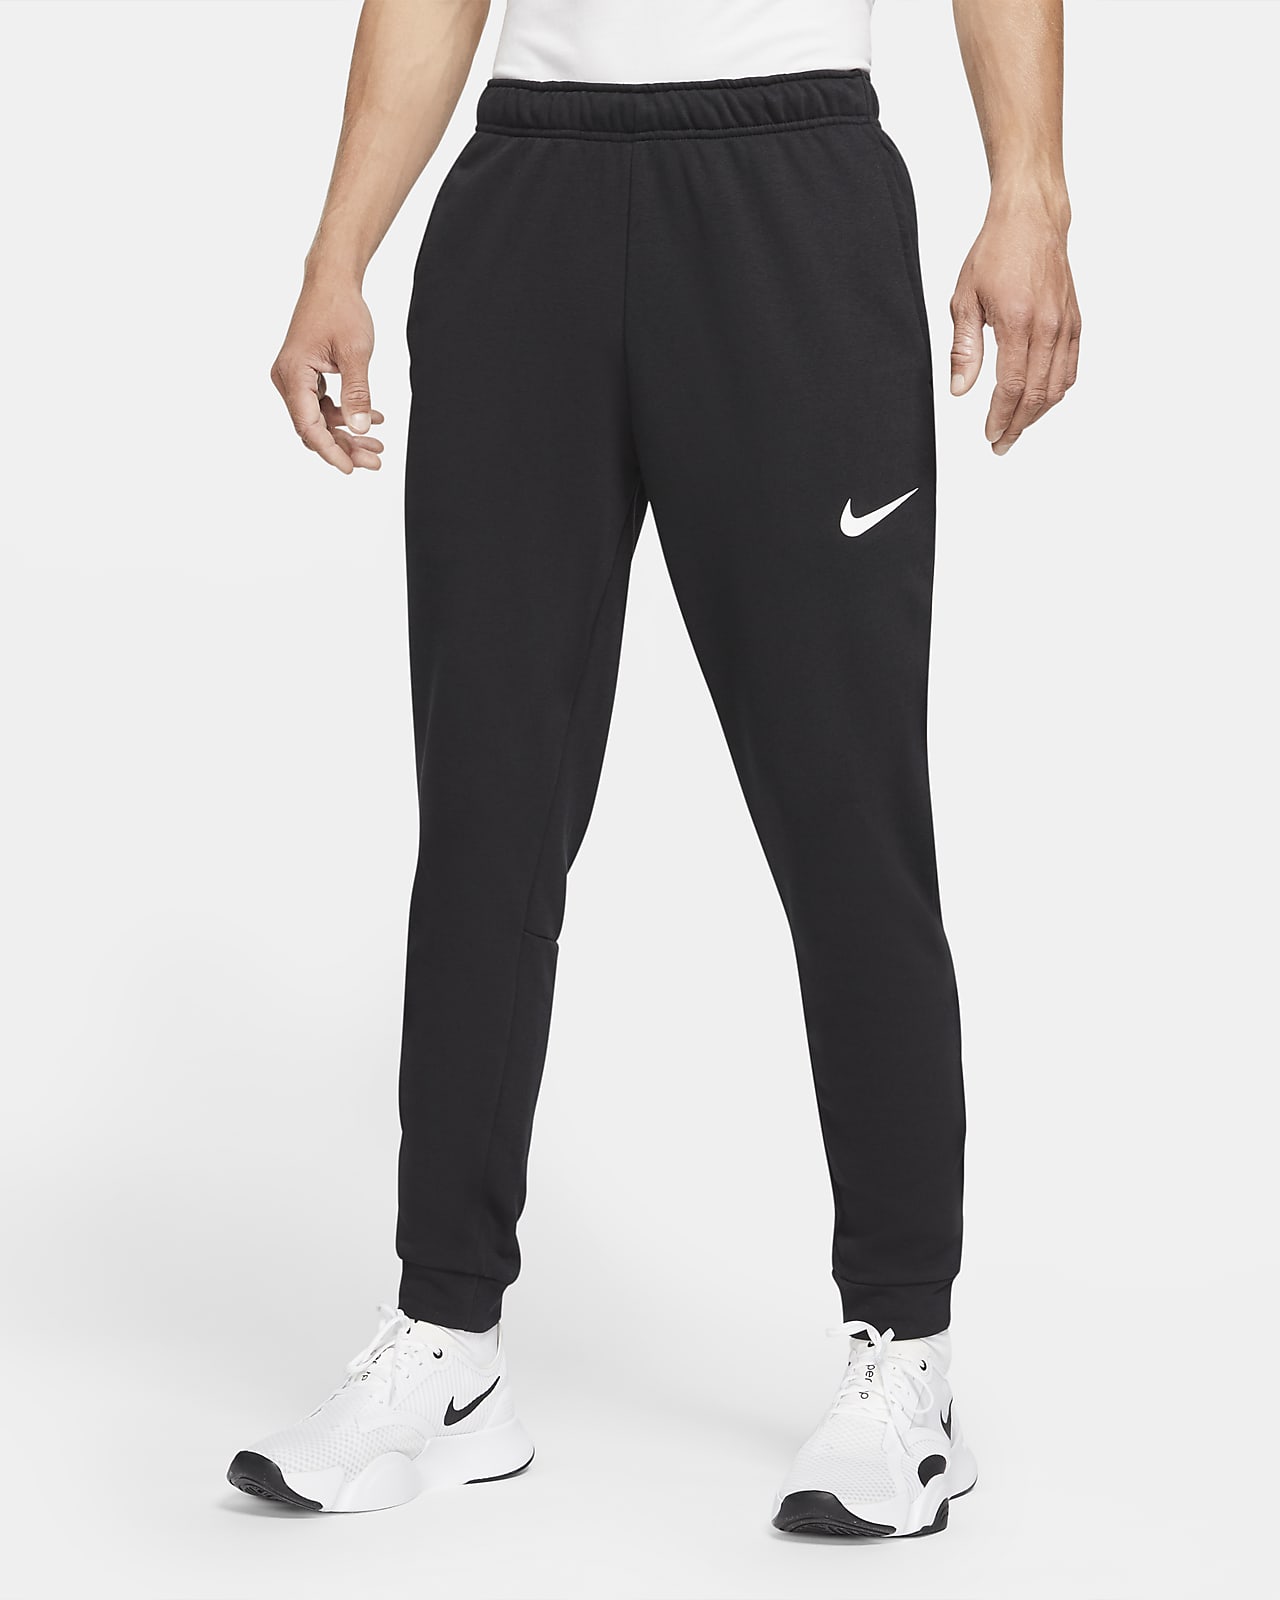 Pánské flísové fitness kalhoty Nike Dry Dri-FIT se zúženými nohavicemi